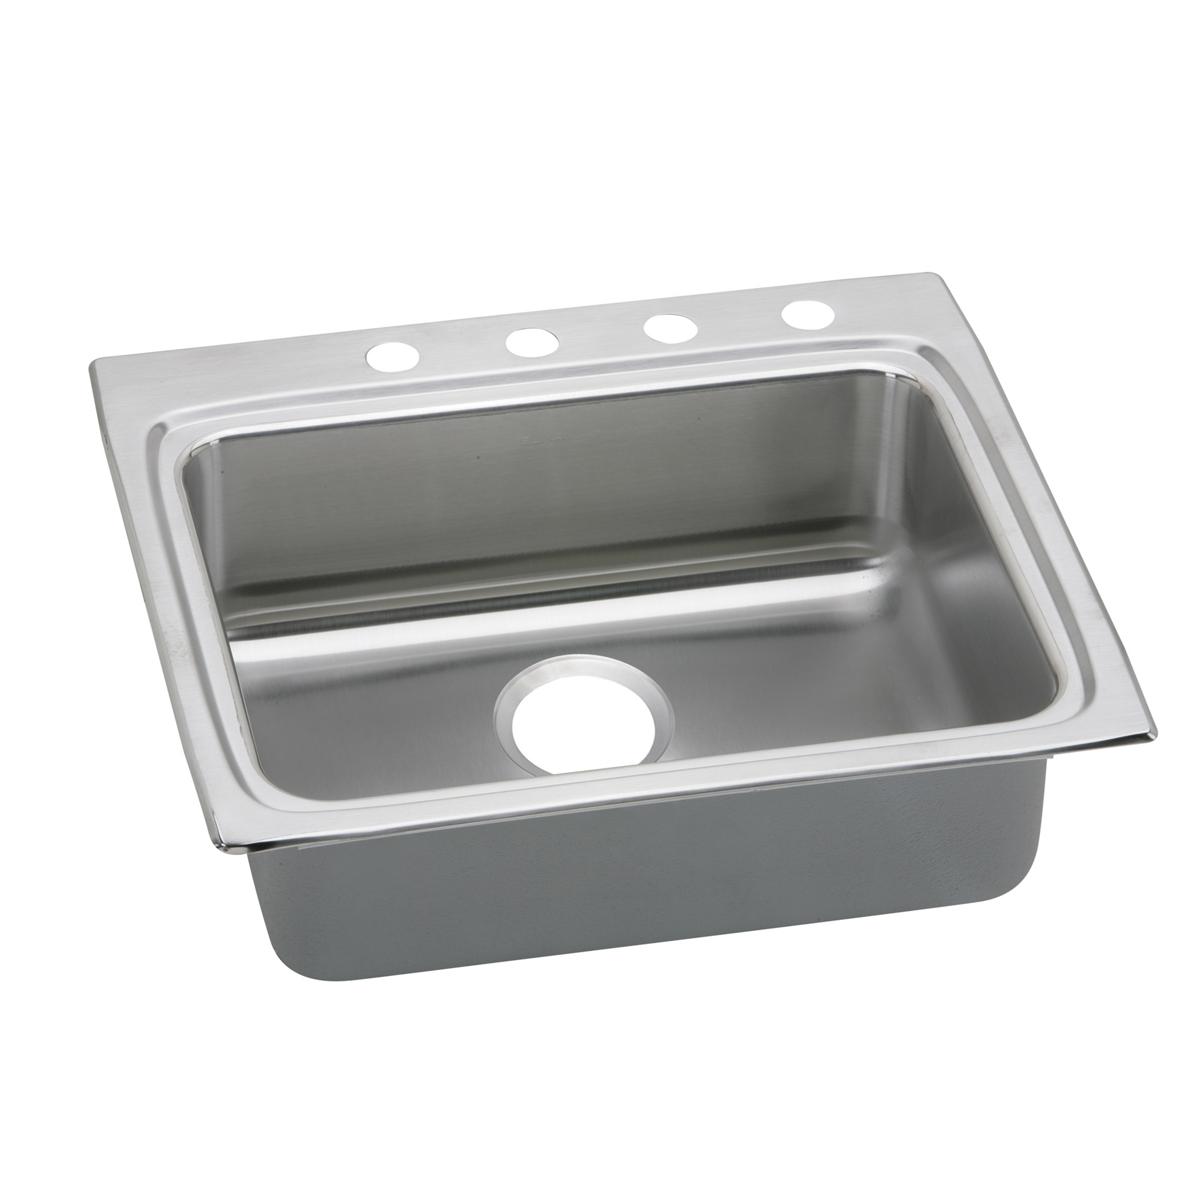 Elkay Stainless Steel Single Bowl Drop-in Sink 1255127